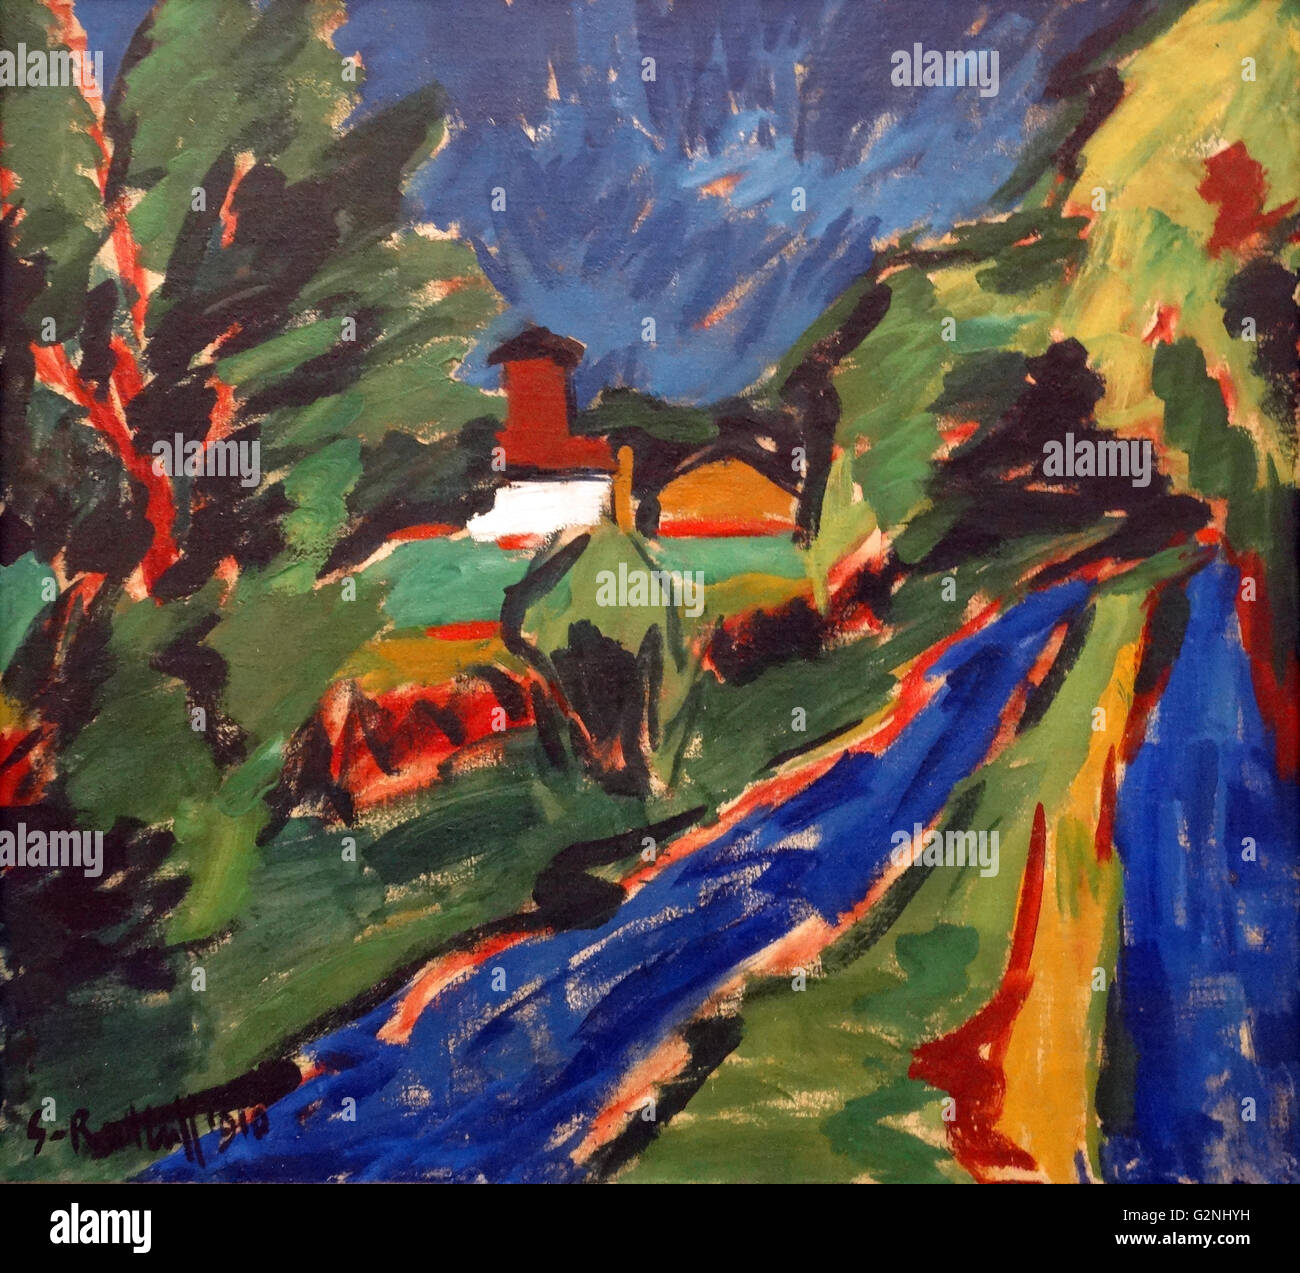 Landschaft bei Dangast (Drucken auf Leinwand) von Karl Schmidt-Rottluff (1884-1976) einen deutschen expressionistischen Maler und Graphiker, einer der vier Gründer - Mitglieder der Künstlergruppe Bruce sterben. Stockfoto